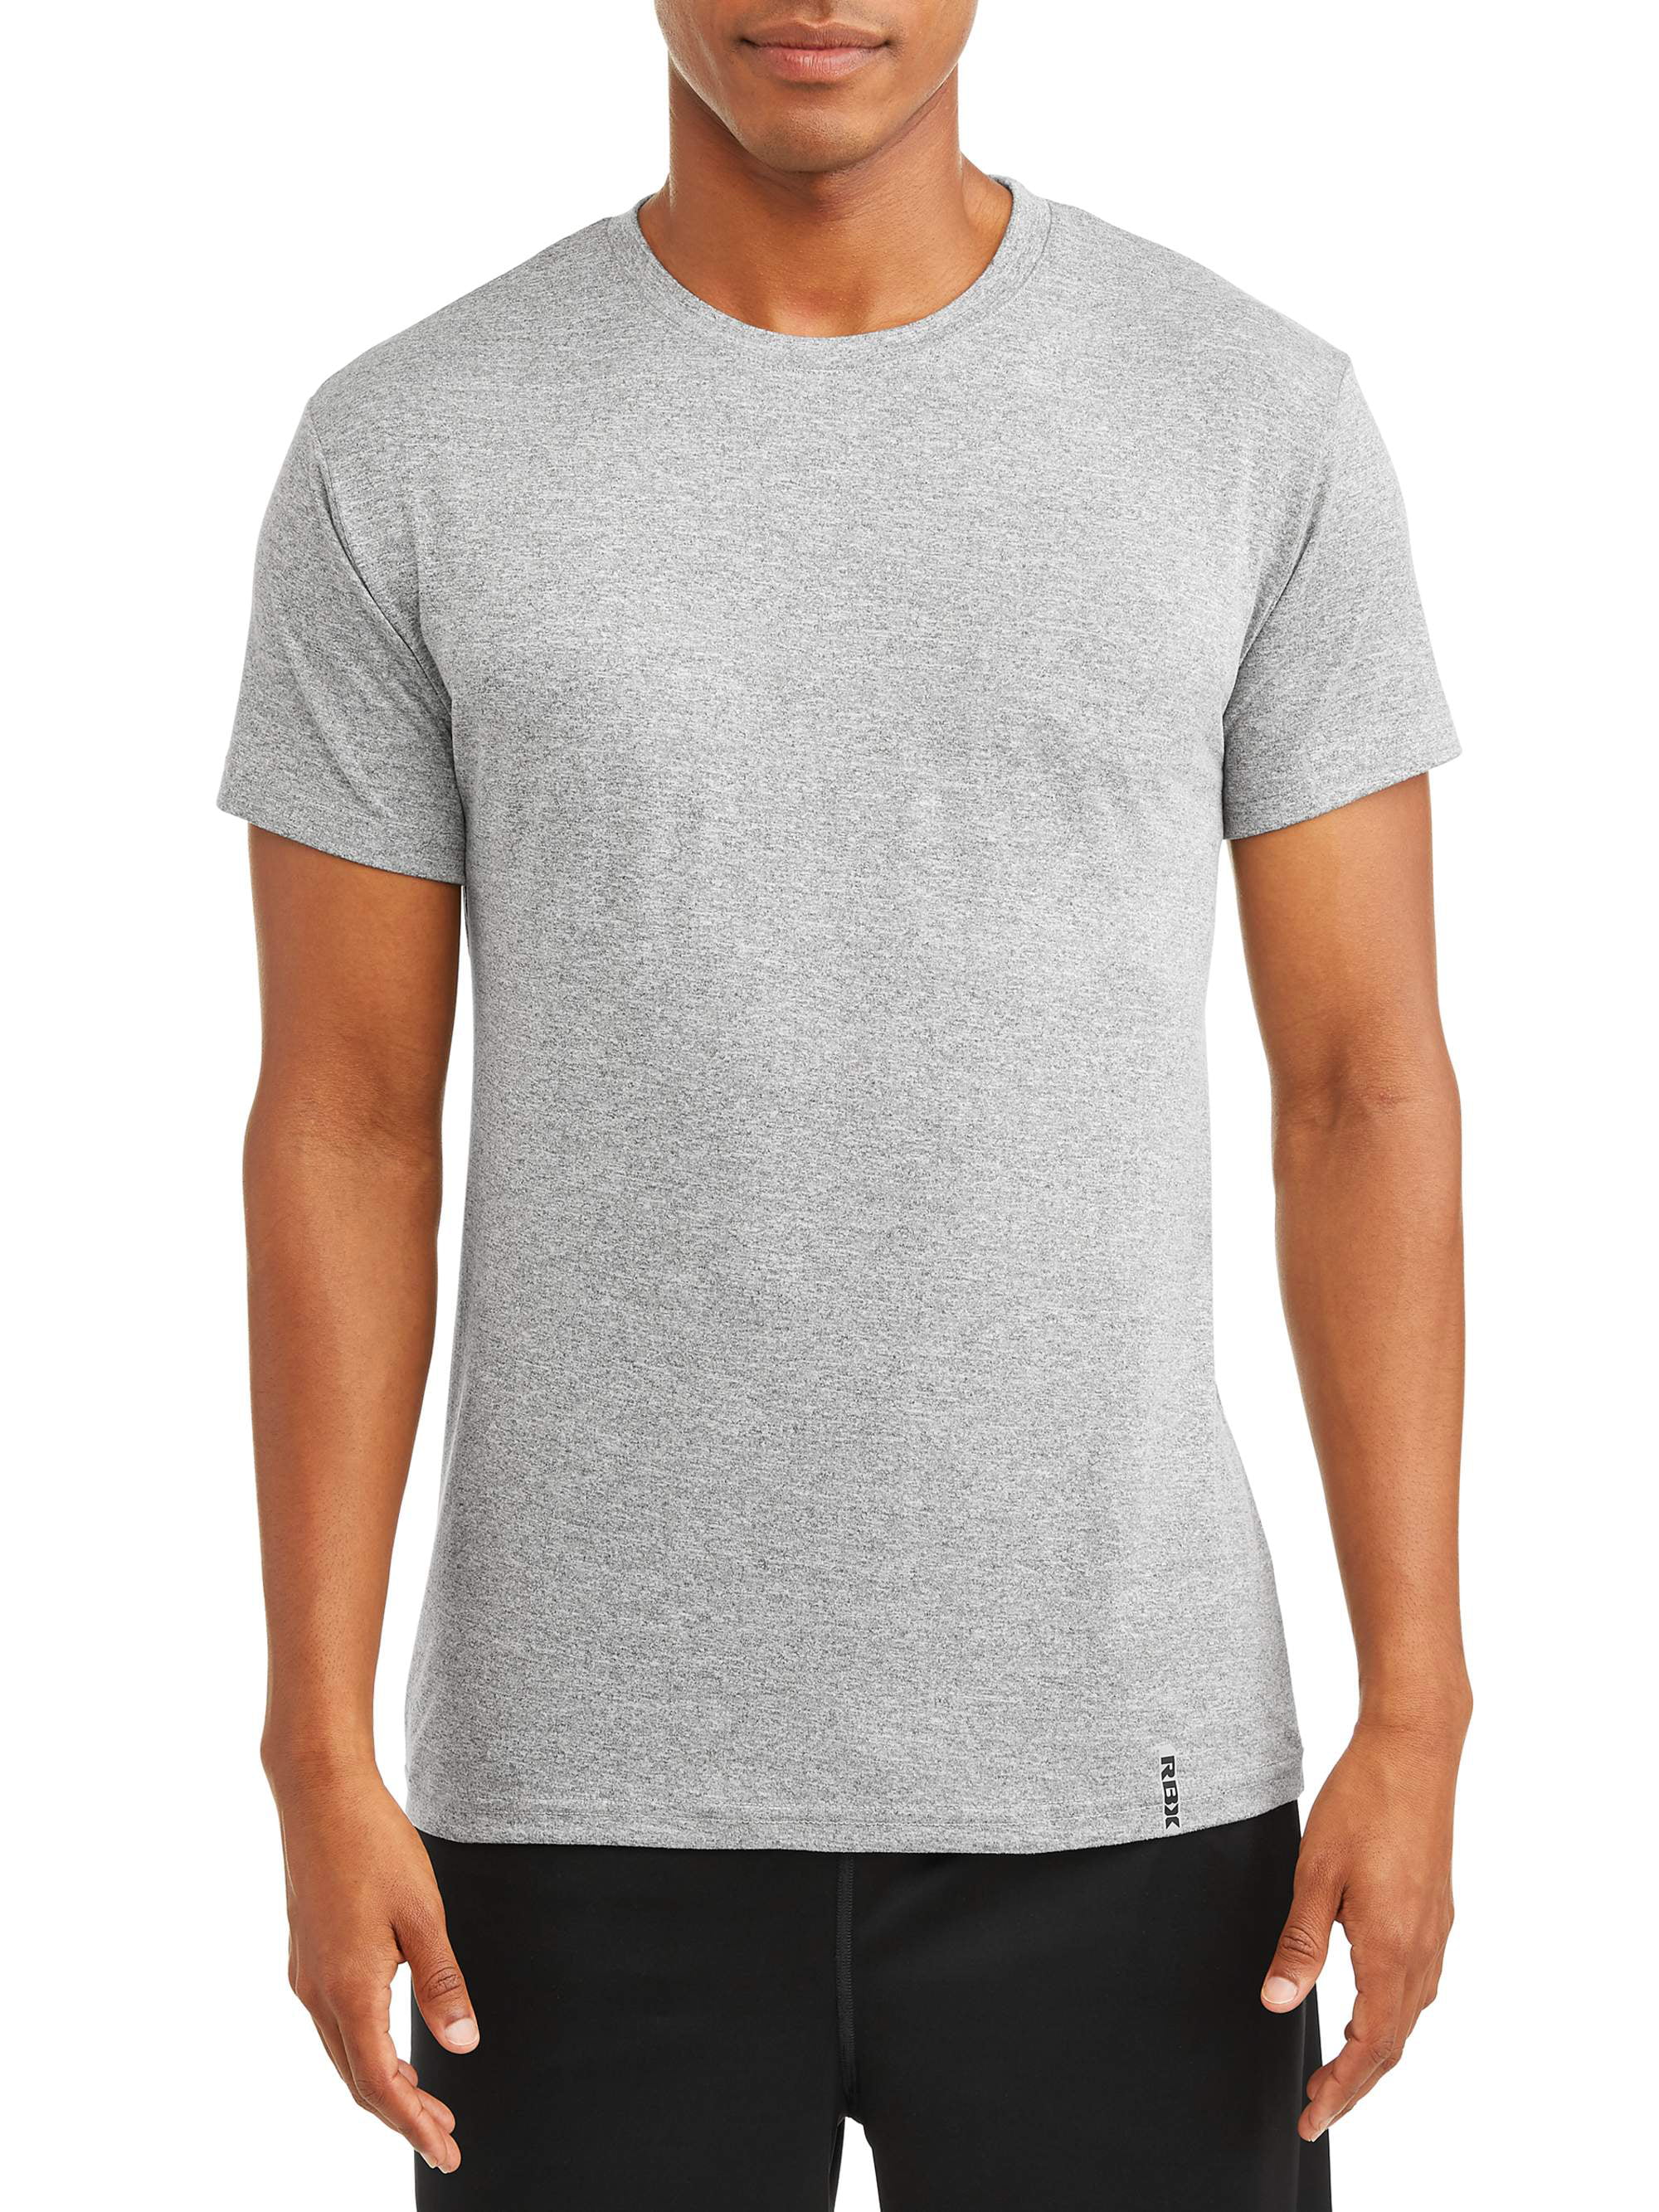 RBX Men's Ultra Soft Short-Sleeve Crew Neck T-Shirt - Walmart.com